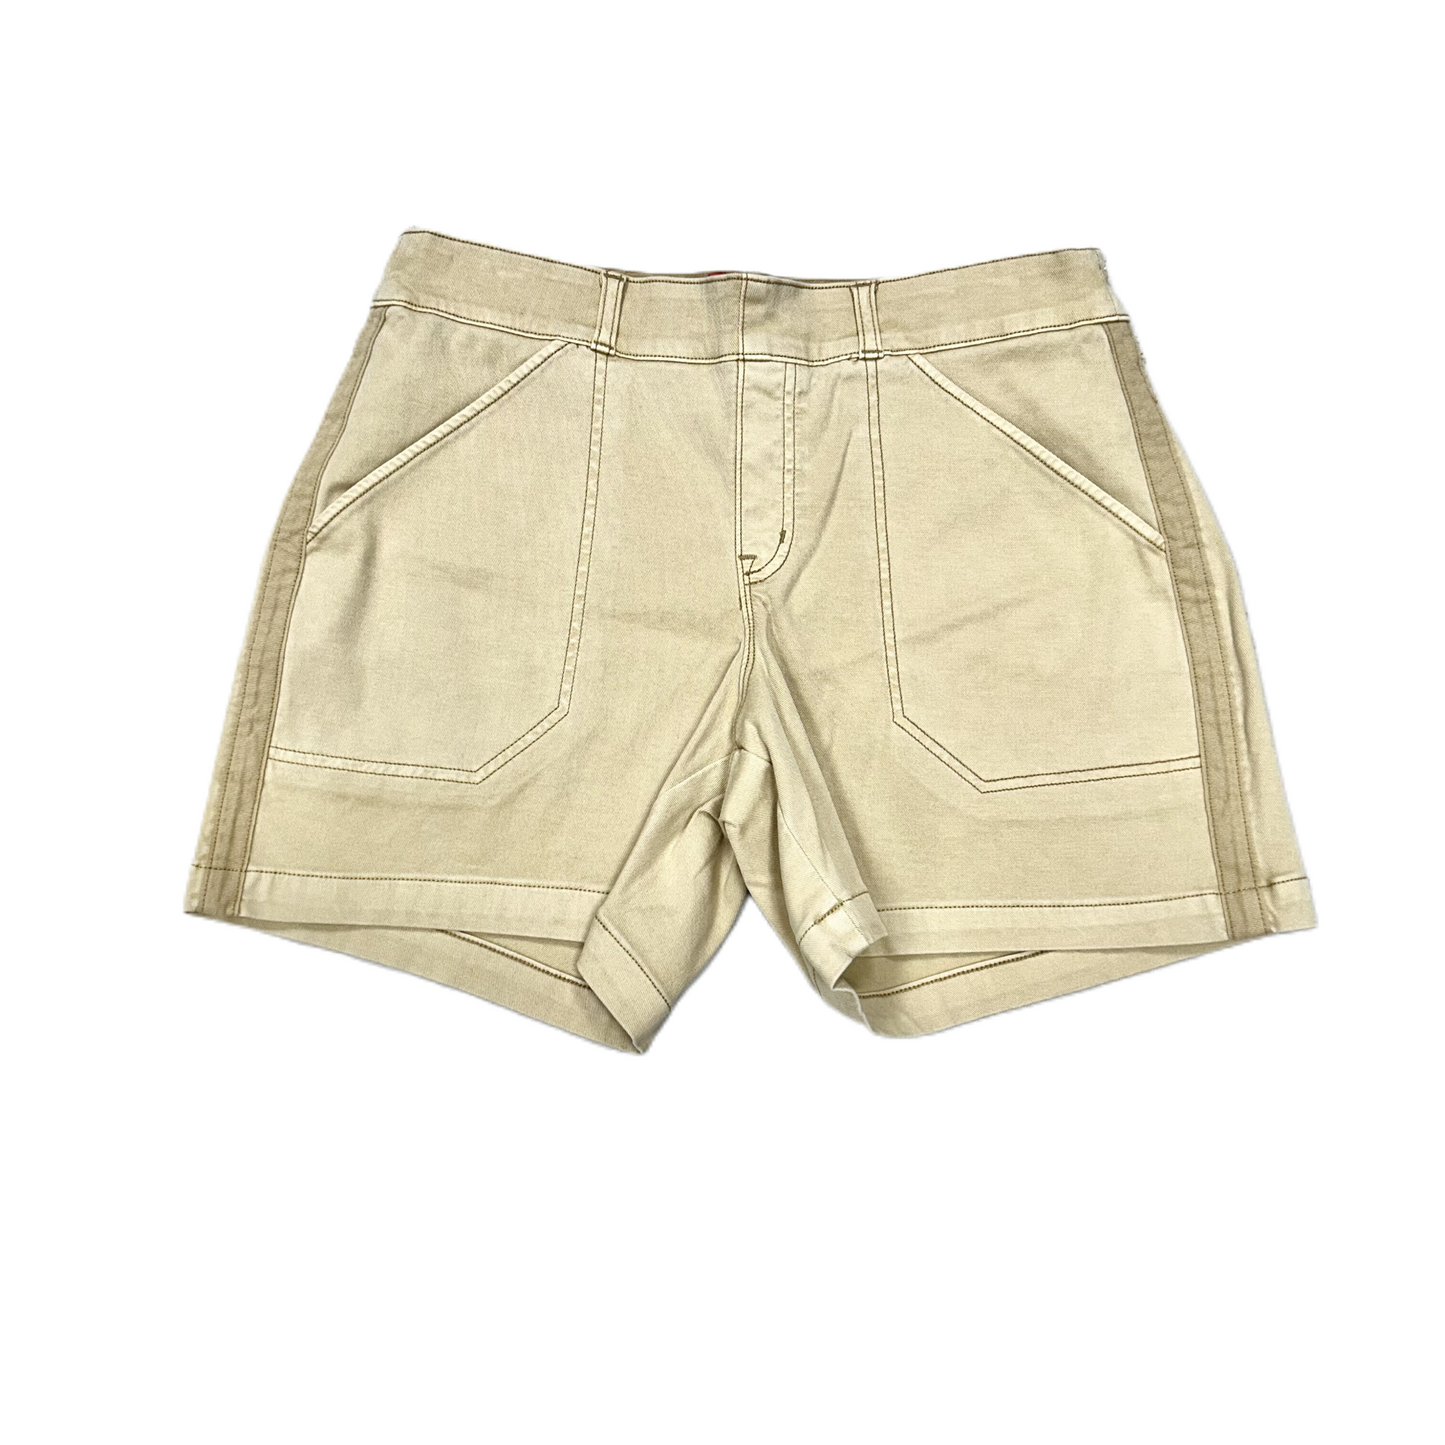 Tan Shorts By Spanx, Size: L